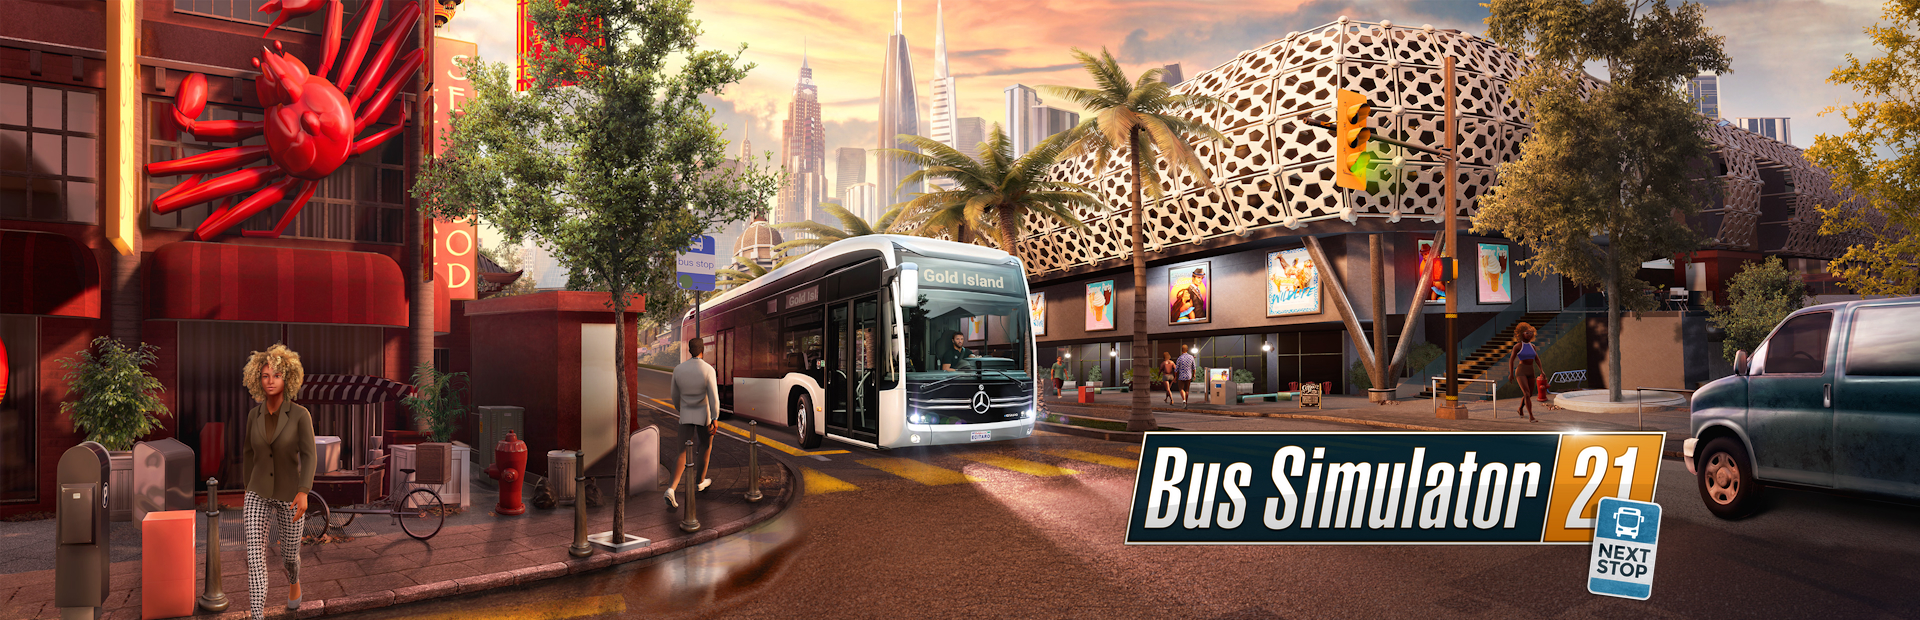 دانلود بازی Bus Simulator 21 Next Stop برای پی سی | گیمباتو